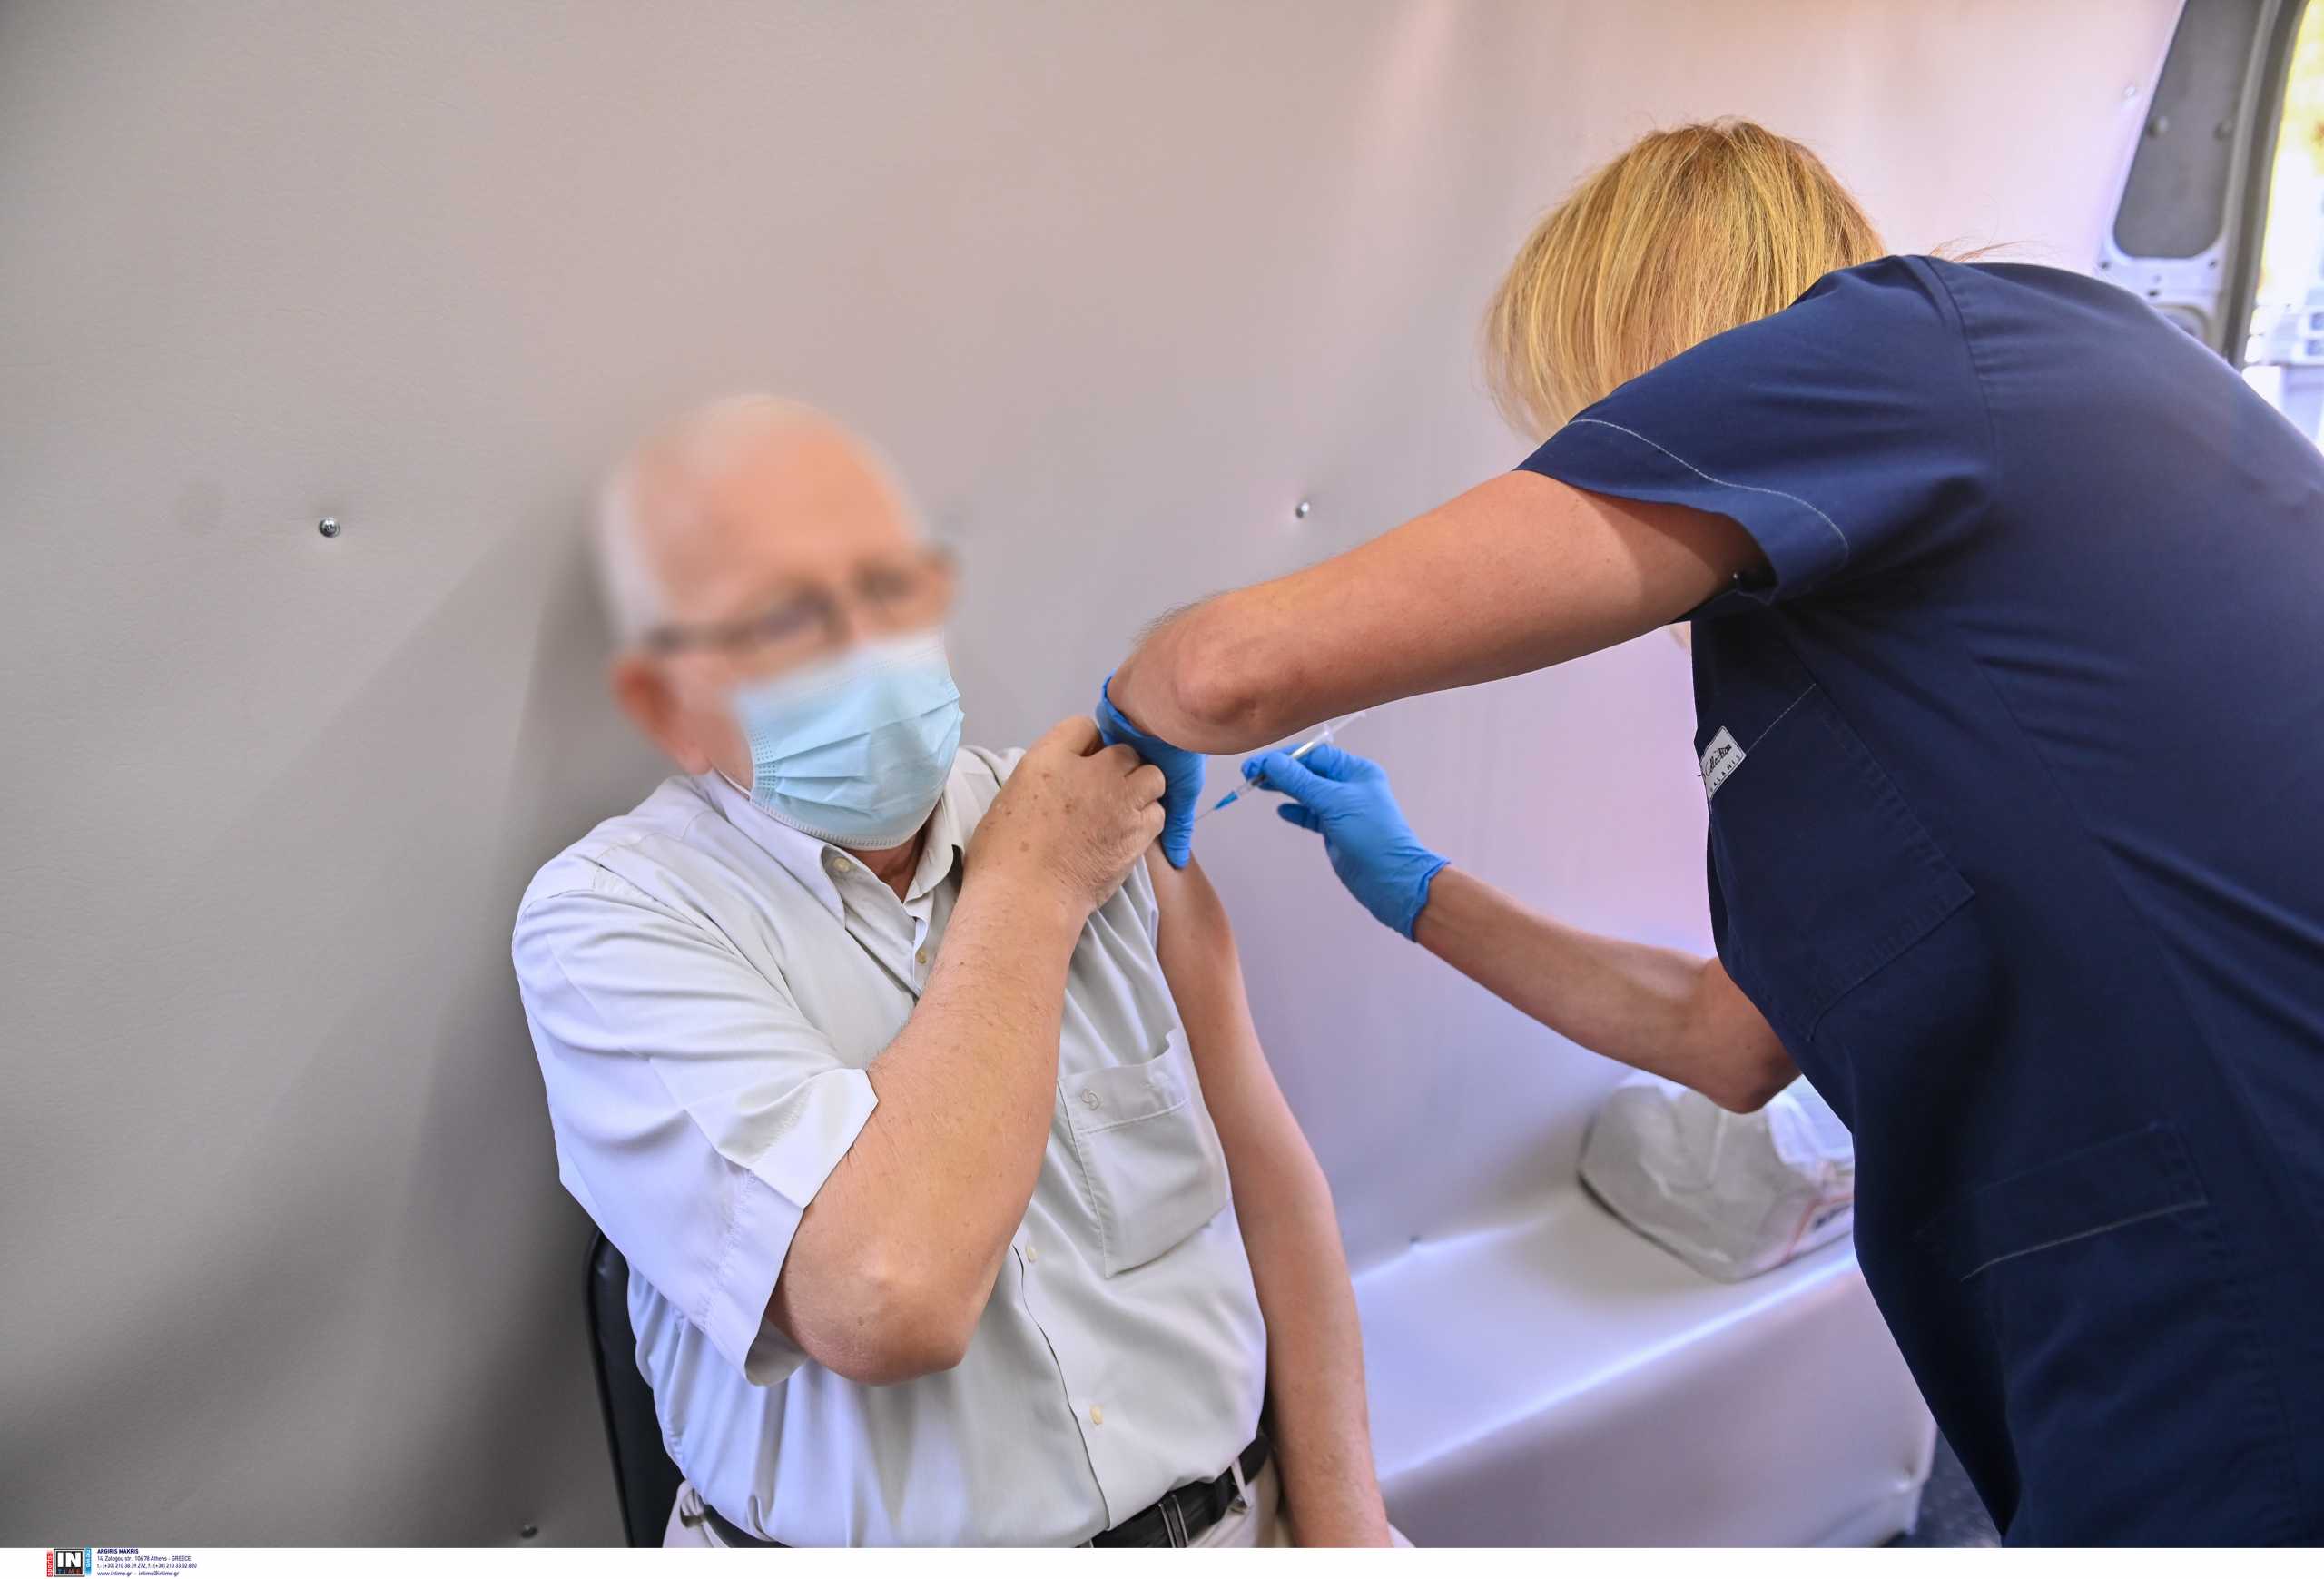 Κορονοϊός - Εμβολιασμοί: Νέες διευκρινίσεις για τους Έλληνες άνω των 60 ετών που εμβολιάστηκαν στο εξωτερικό